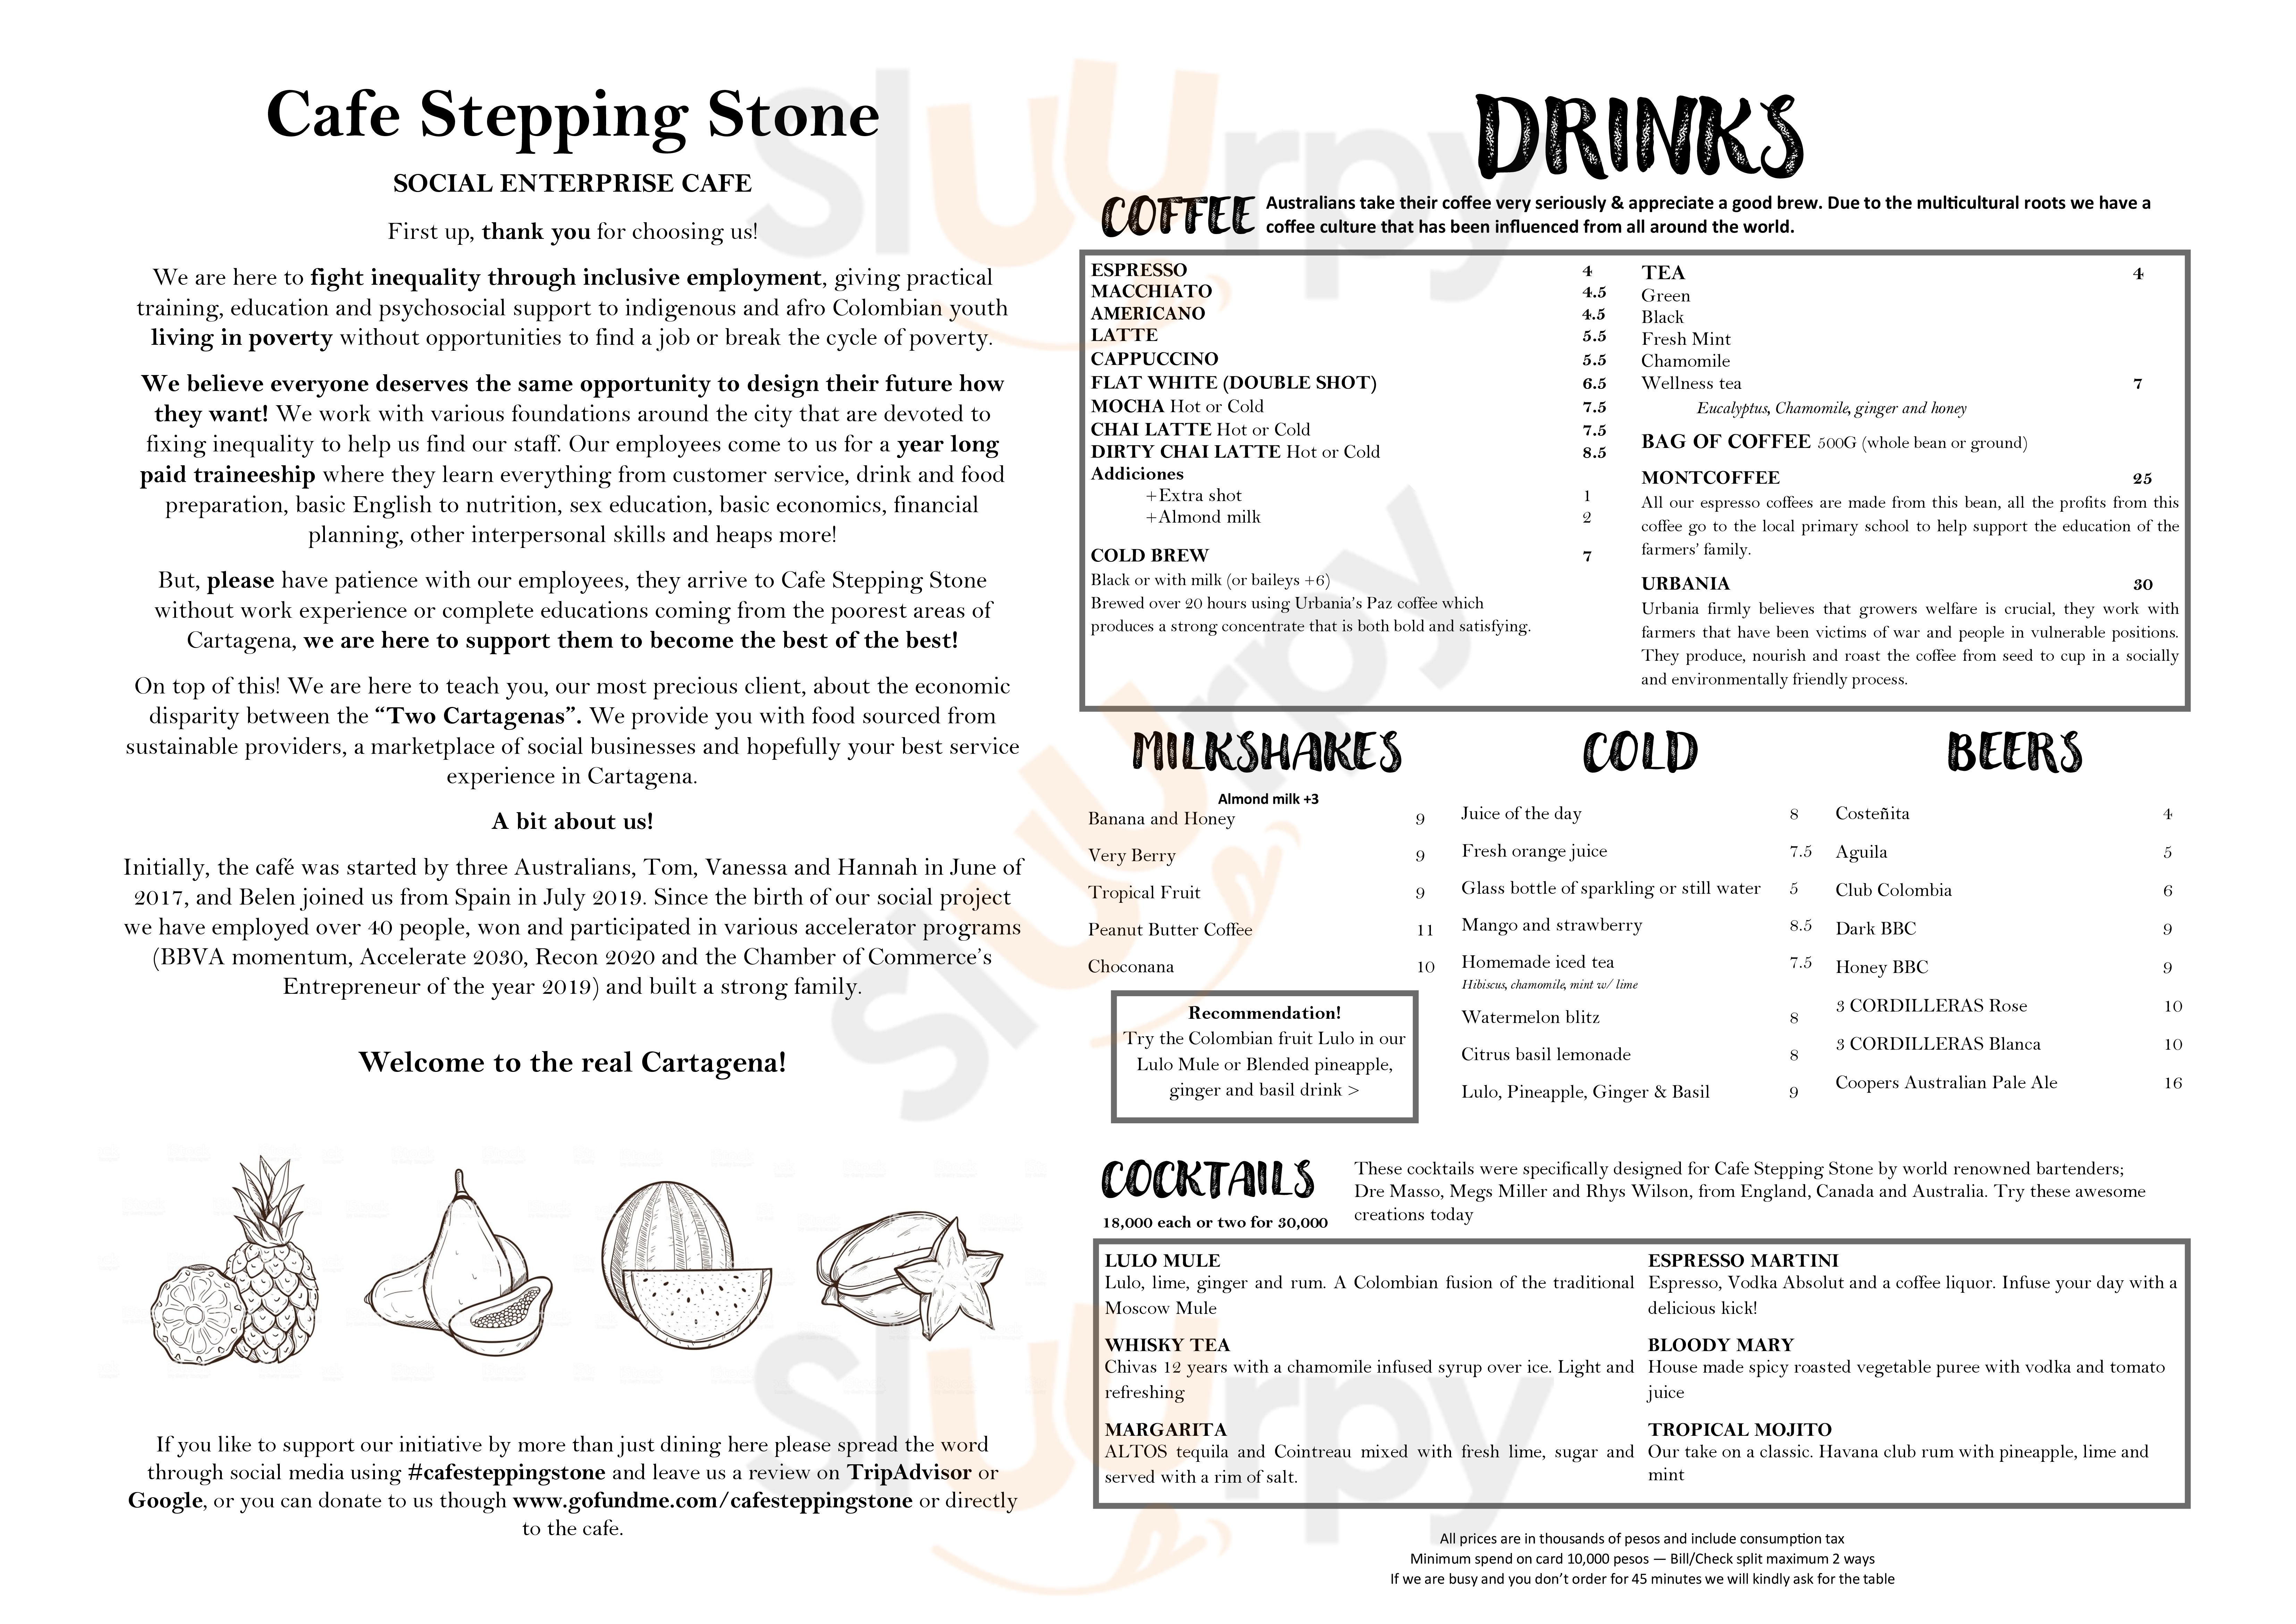 Cafe Stepping Stone Cartagena Menu - 1